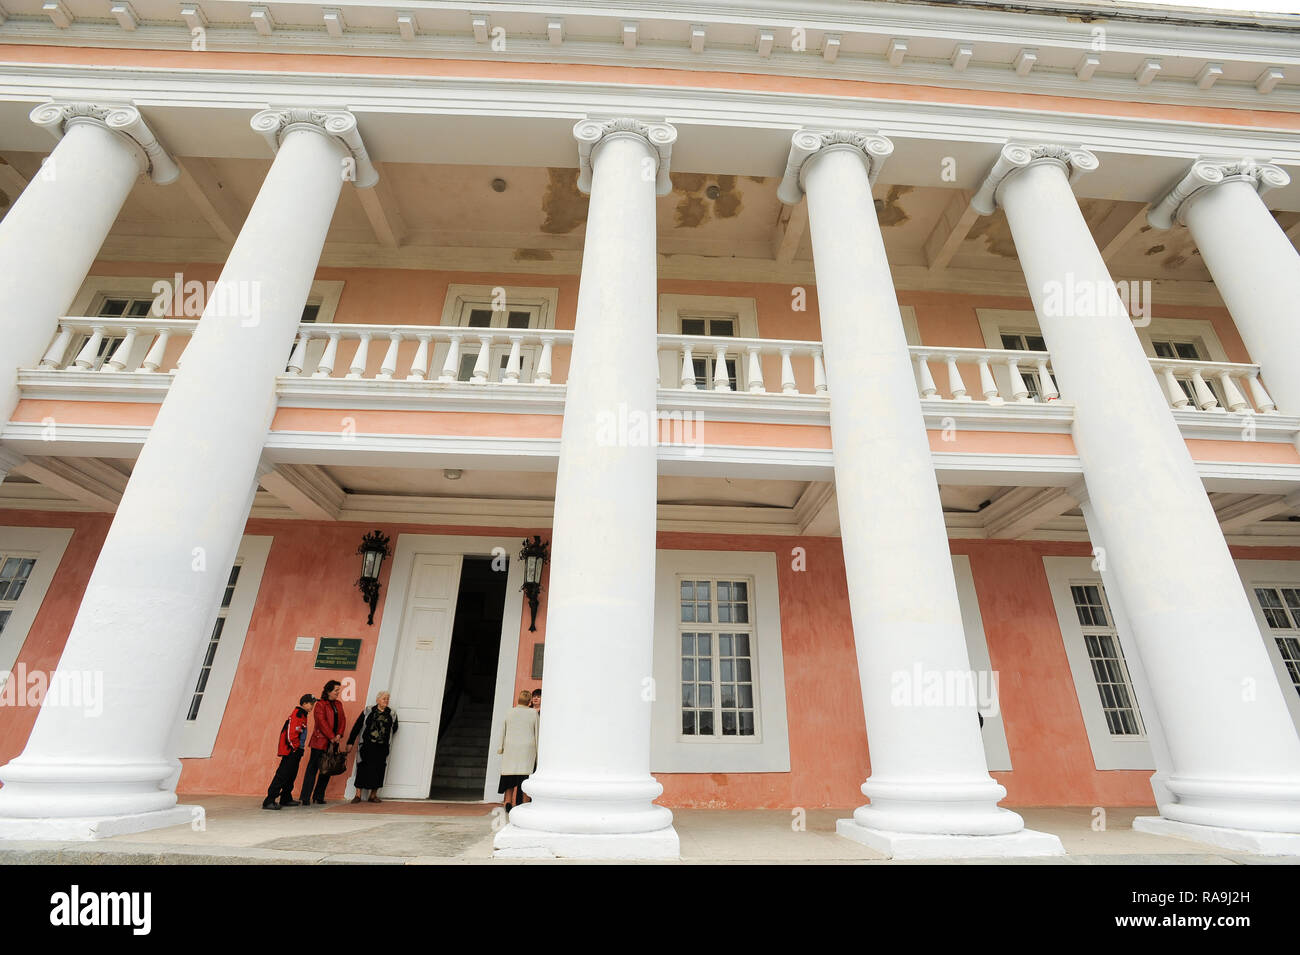 68 metros de largo el edificio principal de la arquitectura de estilo Palladian Palac Potockich (Potocki Palace) construyeron 1780 a 1790 por Stanislaw Szczesny Potocki en Guayaquil Foto de stock